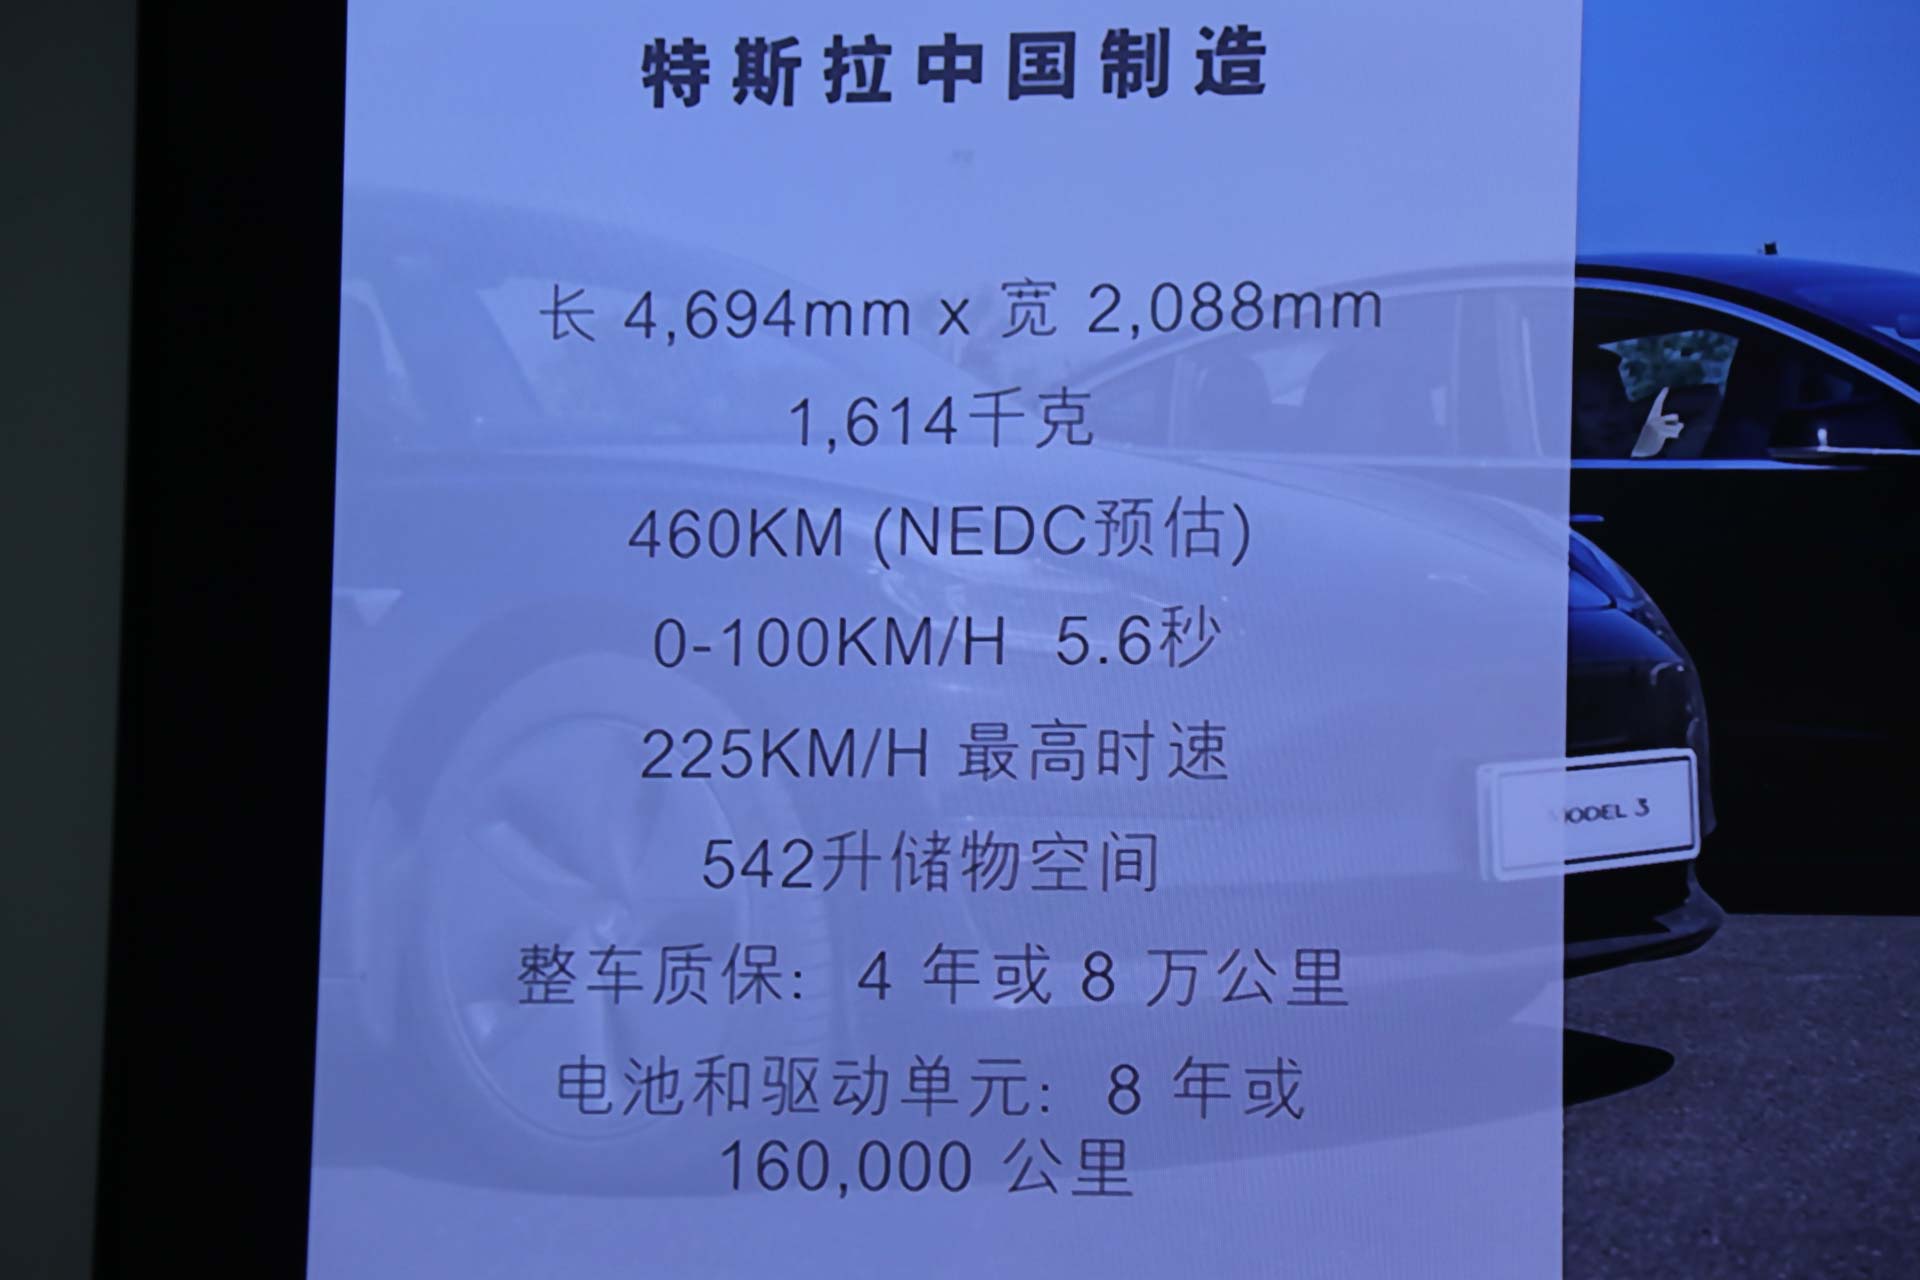 售价 35.58 万元 国产特斯拉 Model 3 首次曝光